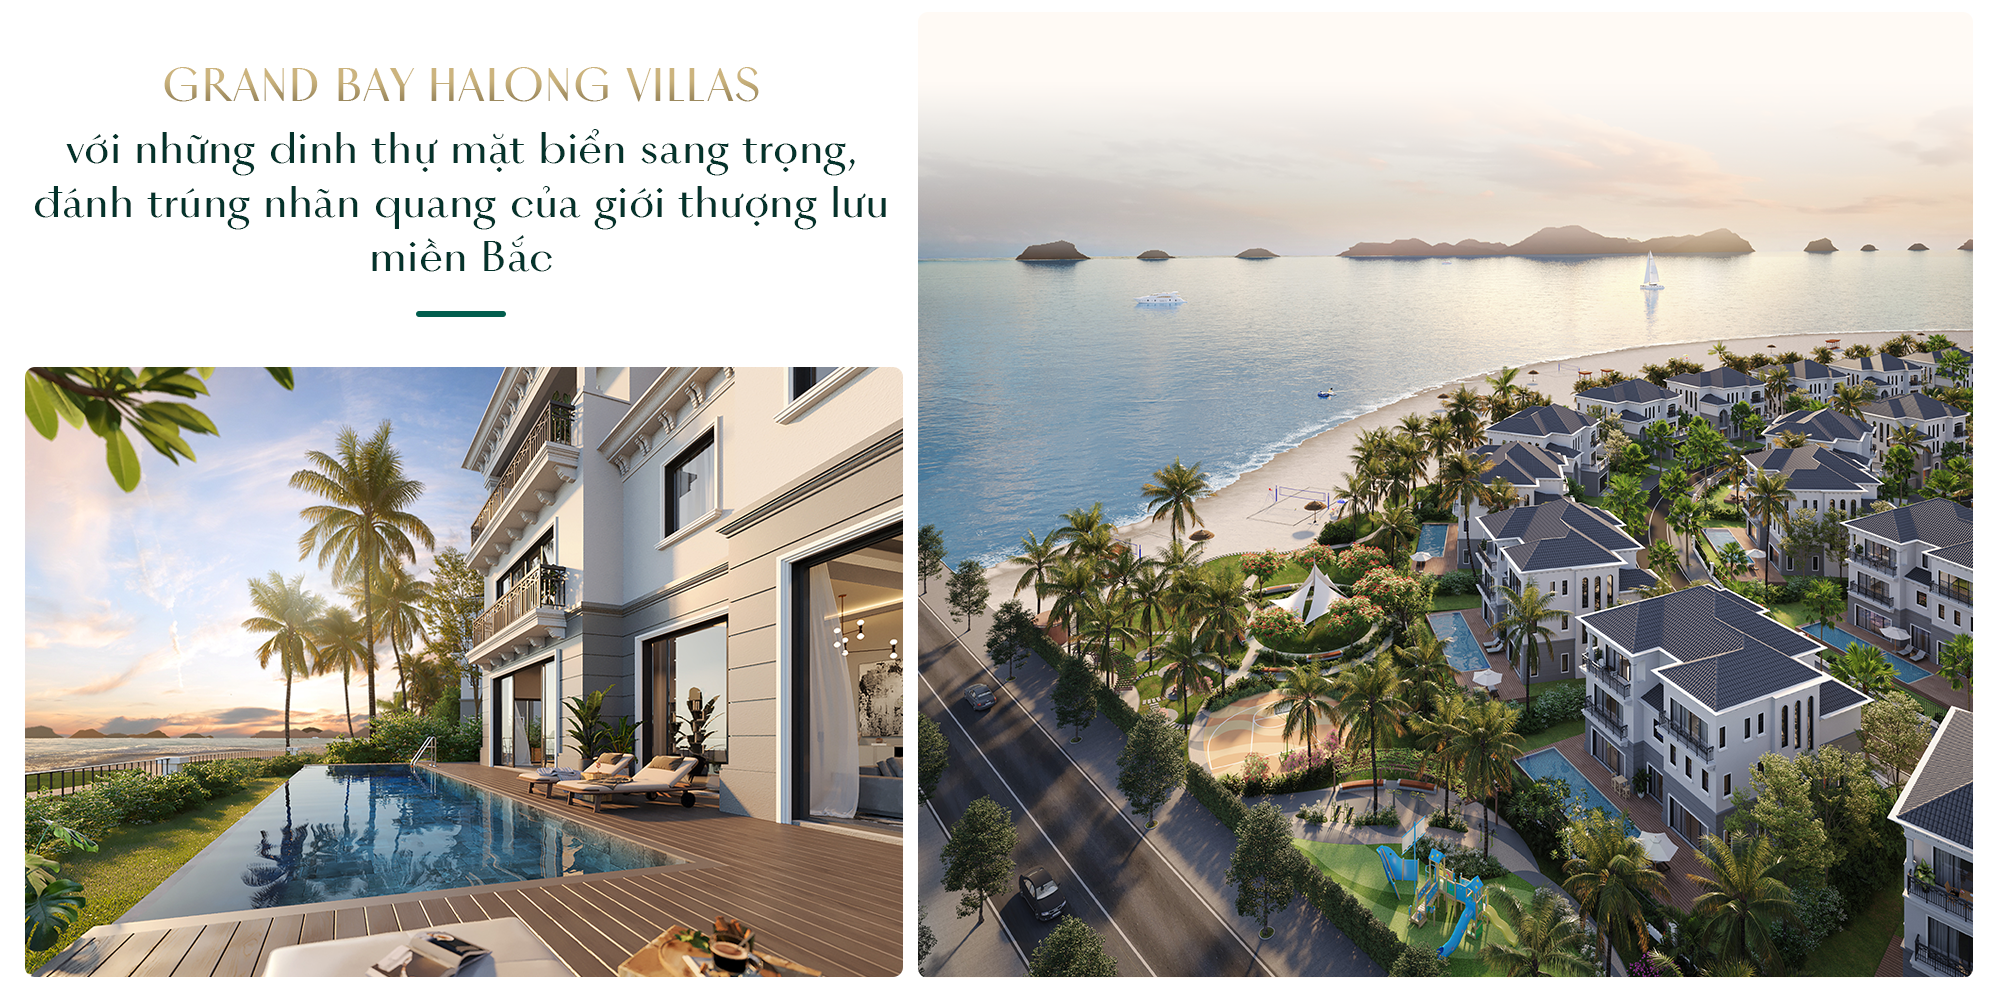 Grand Bay Halong Villas: Bến đỗ của phong cách sống Resort living sang trọng bên vịnh biển - Ảnh 2.